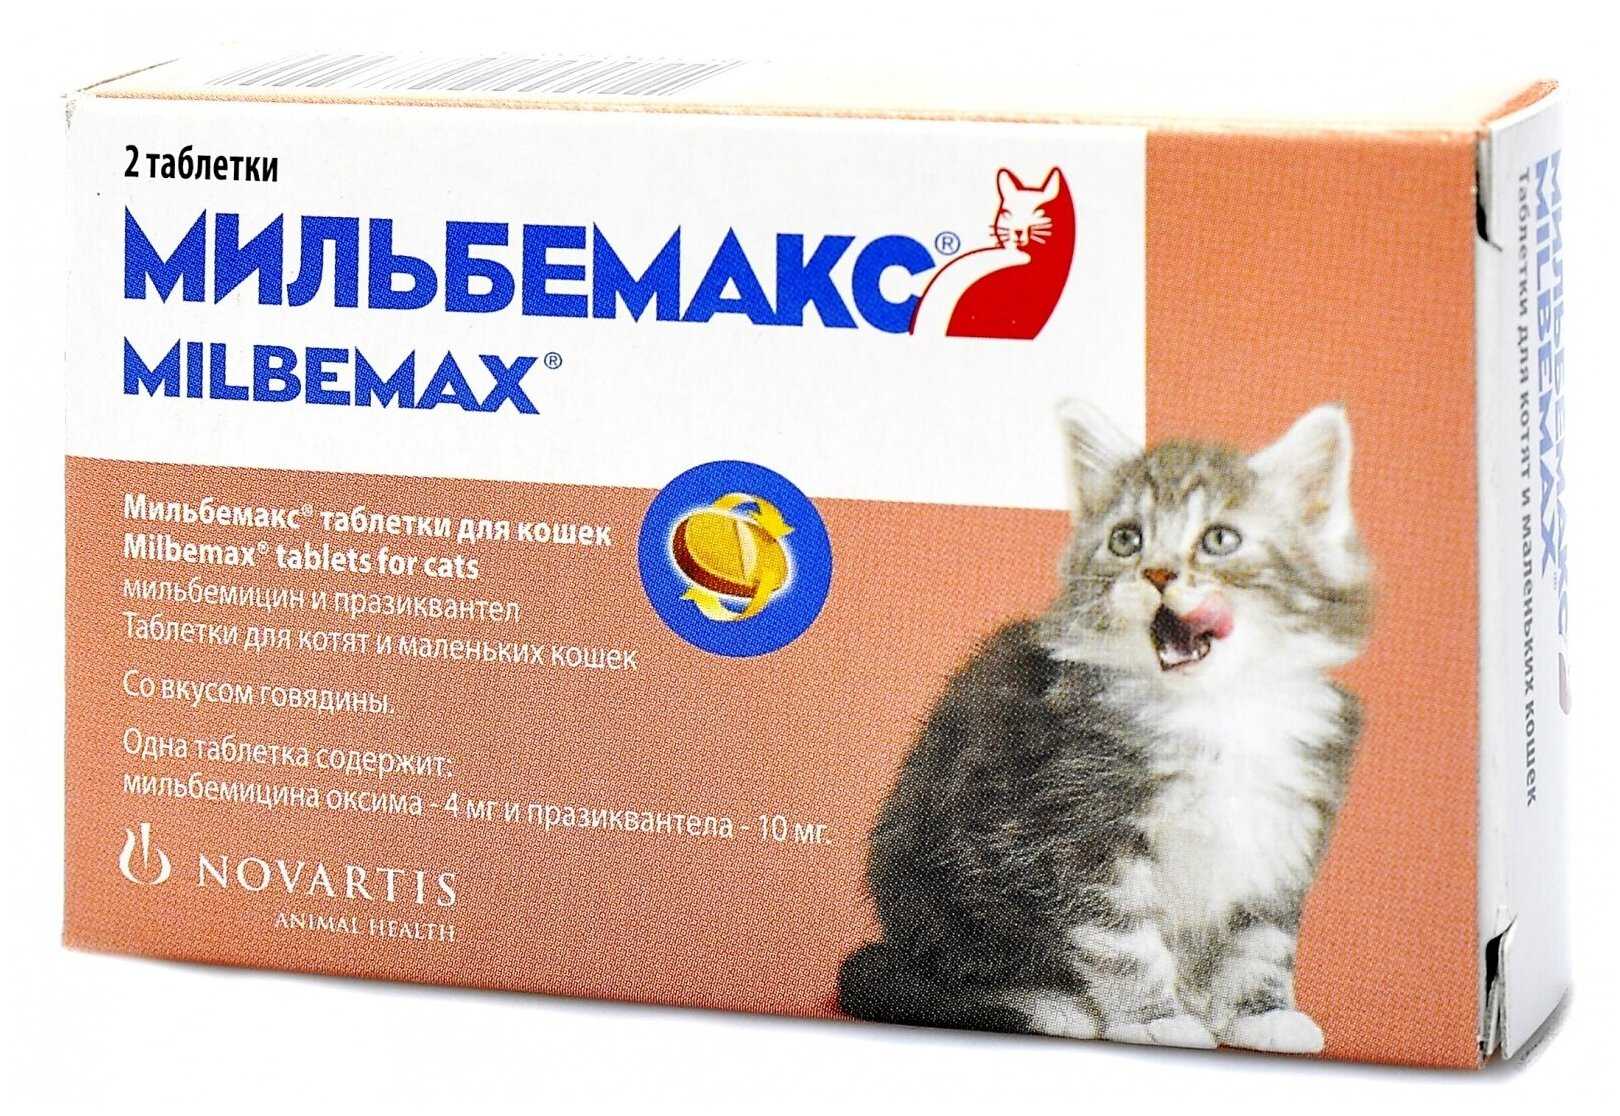 Мильбемакс для лечения и профилактики глистов у кошек